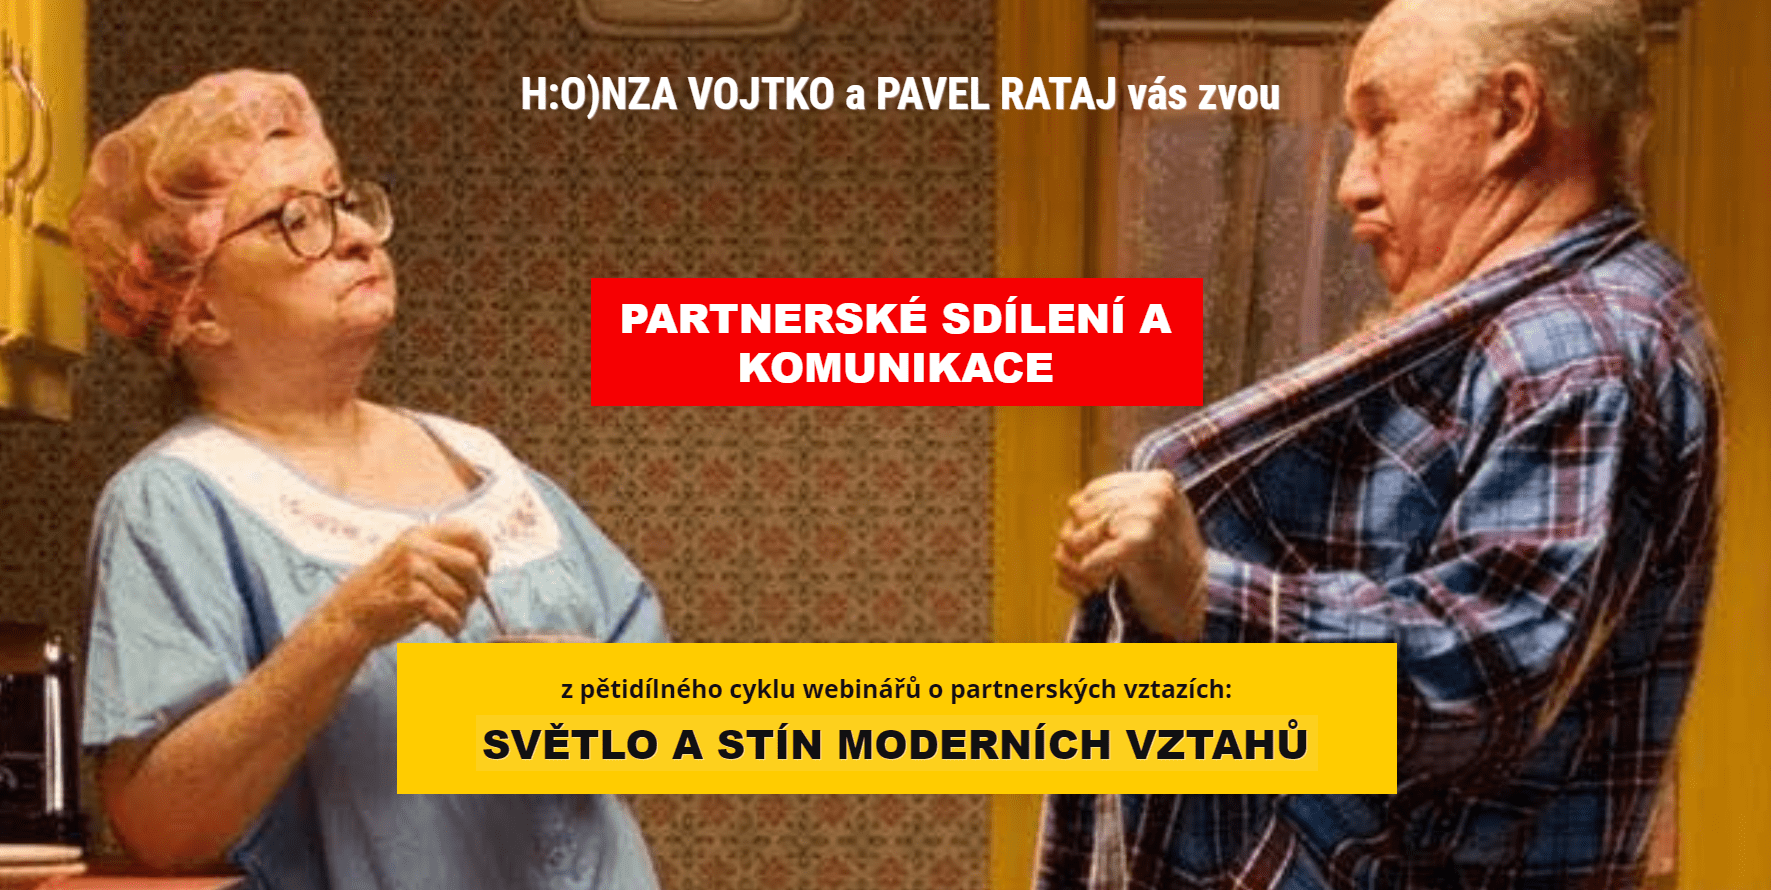 Partnerské sdílení a komunikace - Pavel Rataj a Honza Vojtko